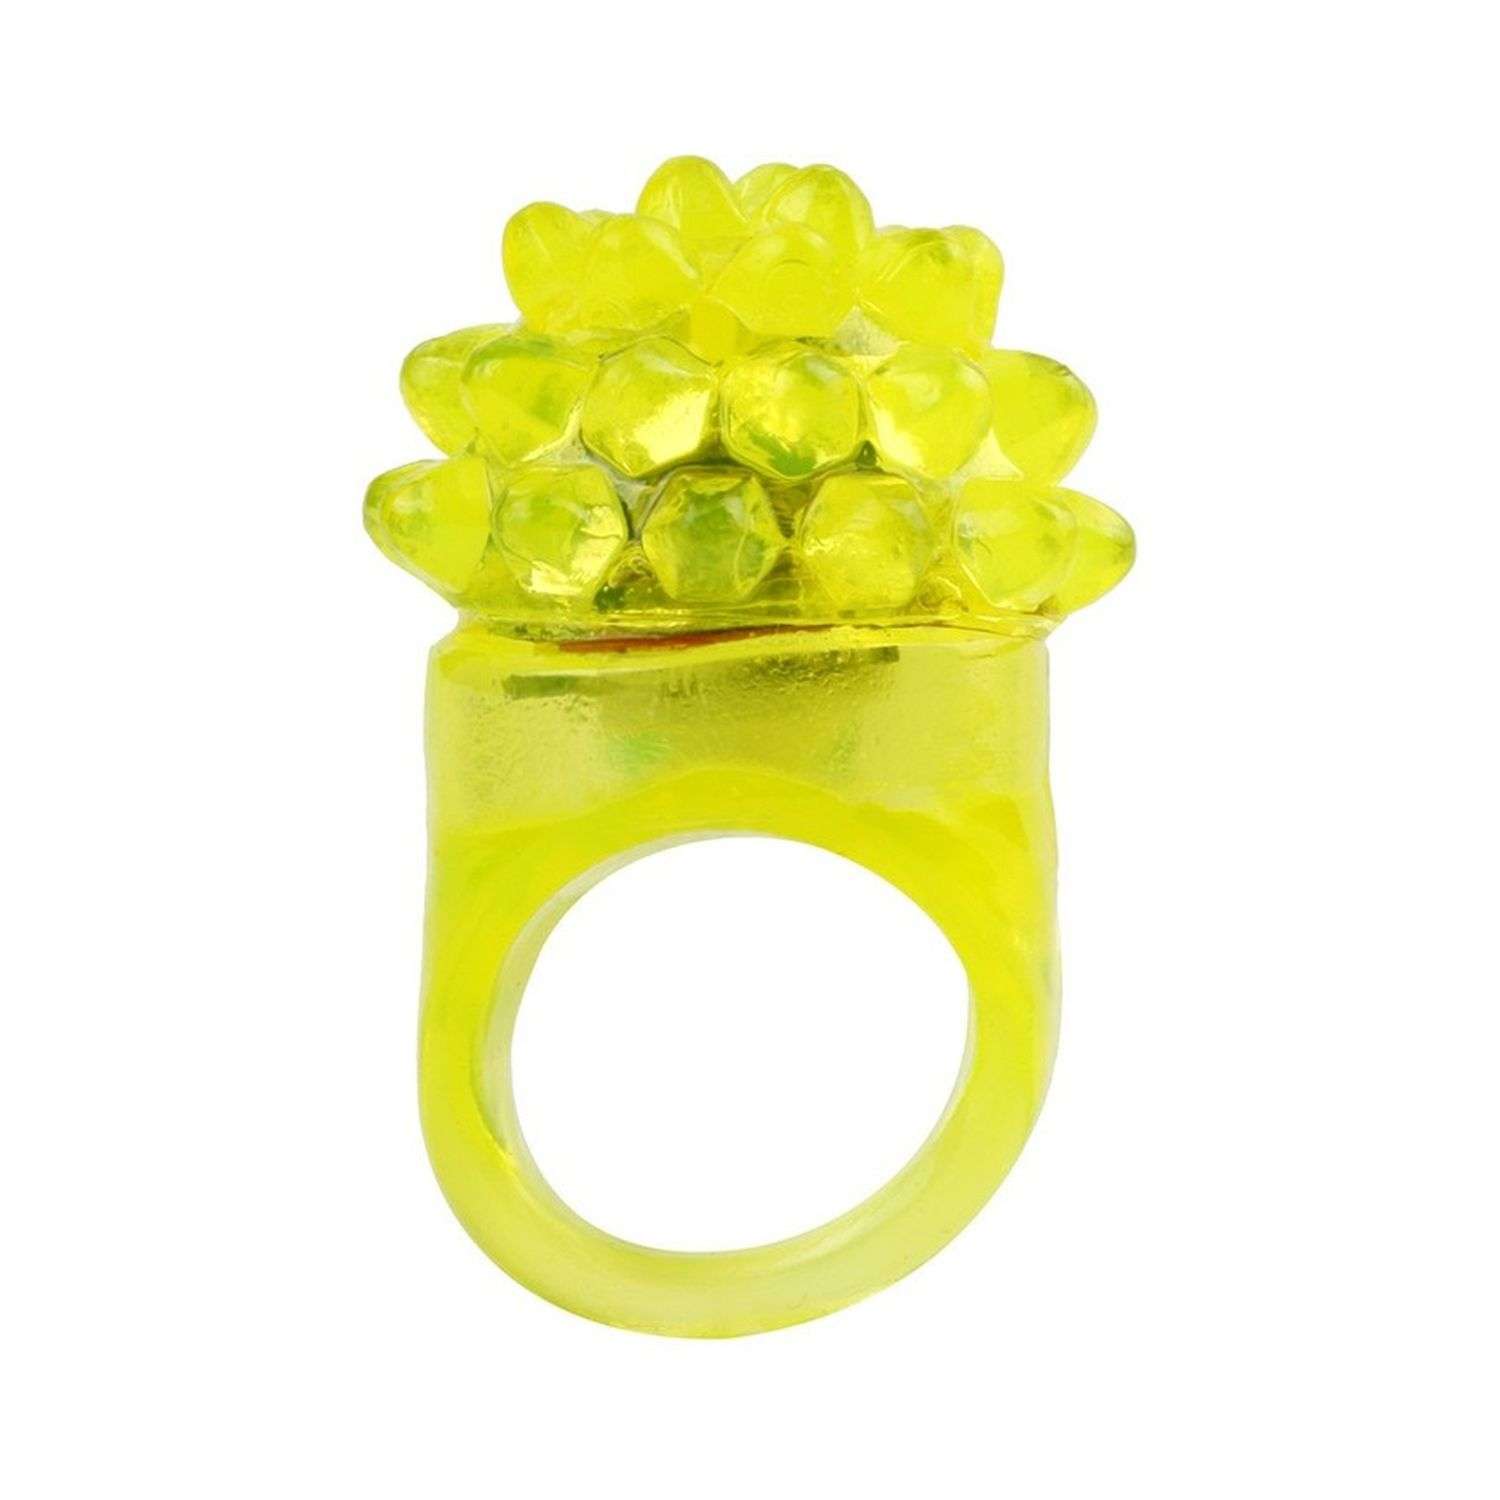 Кольцо Uniglodis Резиновое светящиеся желтый 05411187 - фото 1